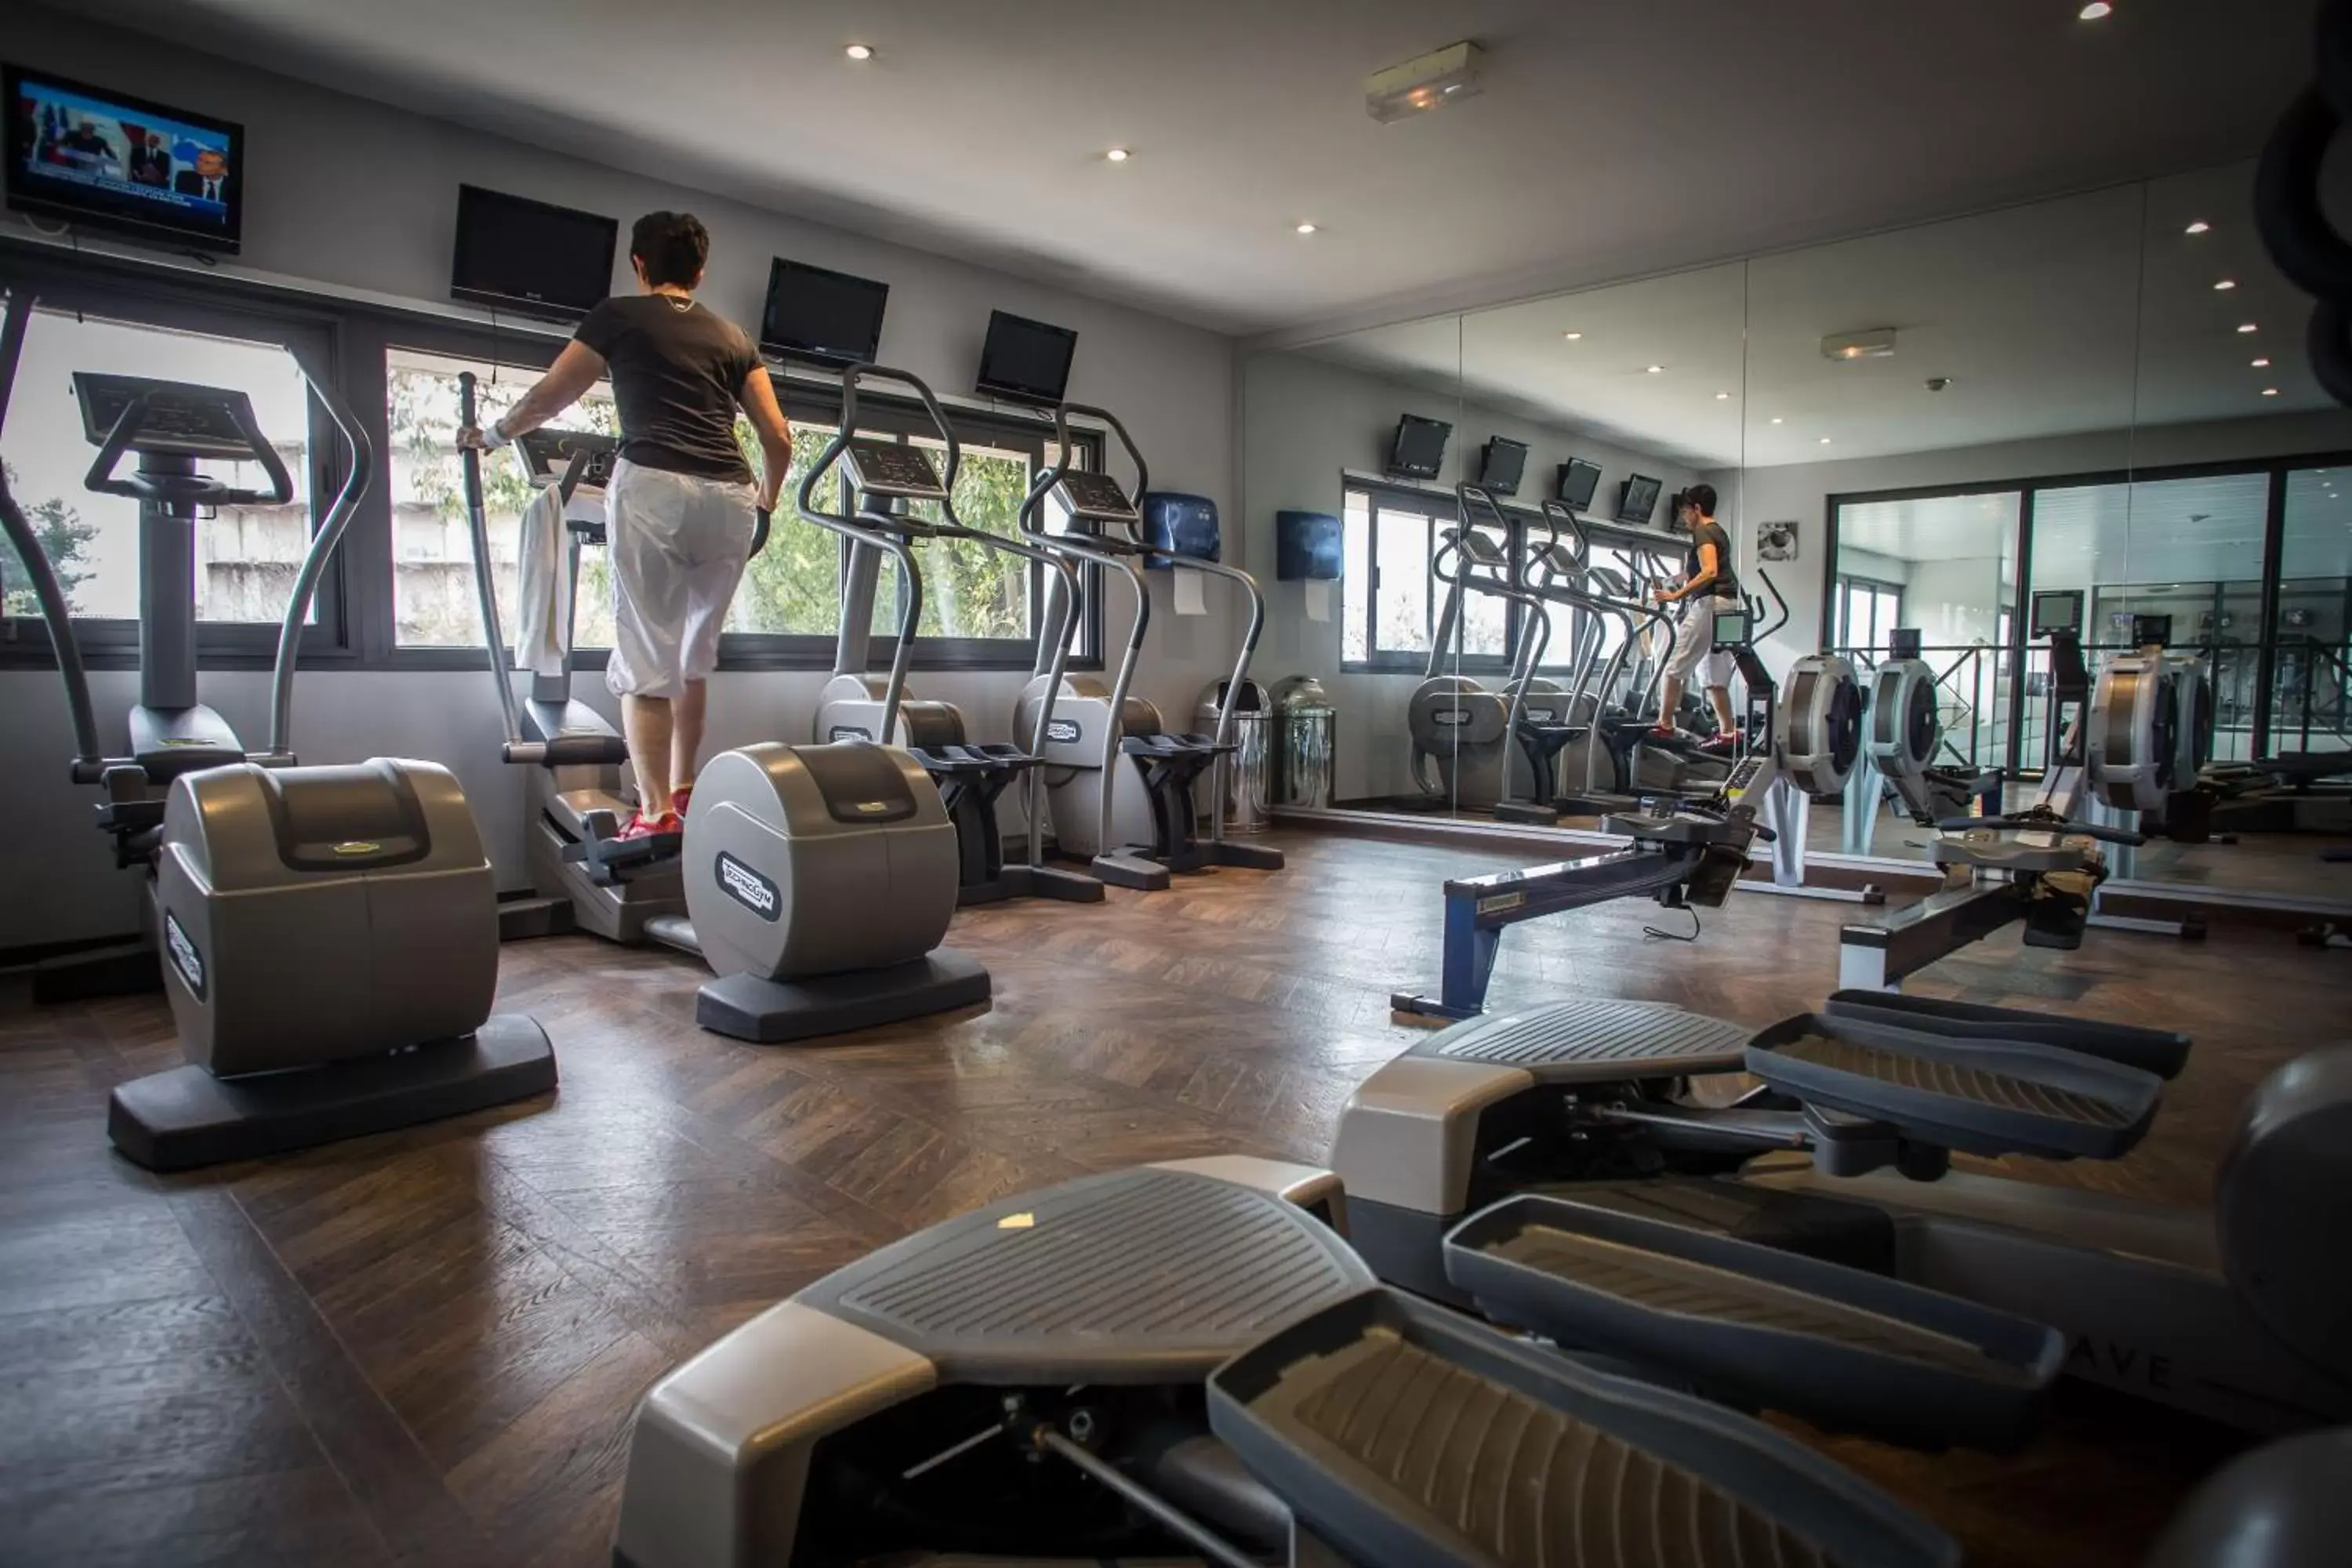 Fitness centre/facilities, Fitness Center/Facilities in Hôtel & Spa Vatel